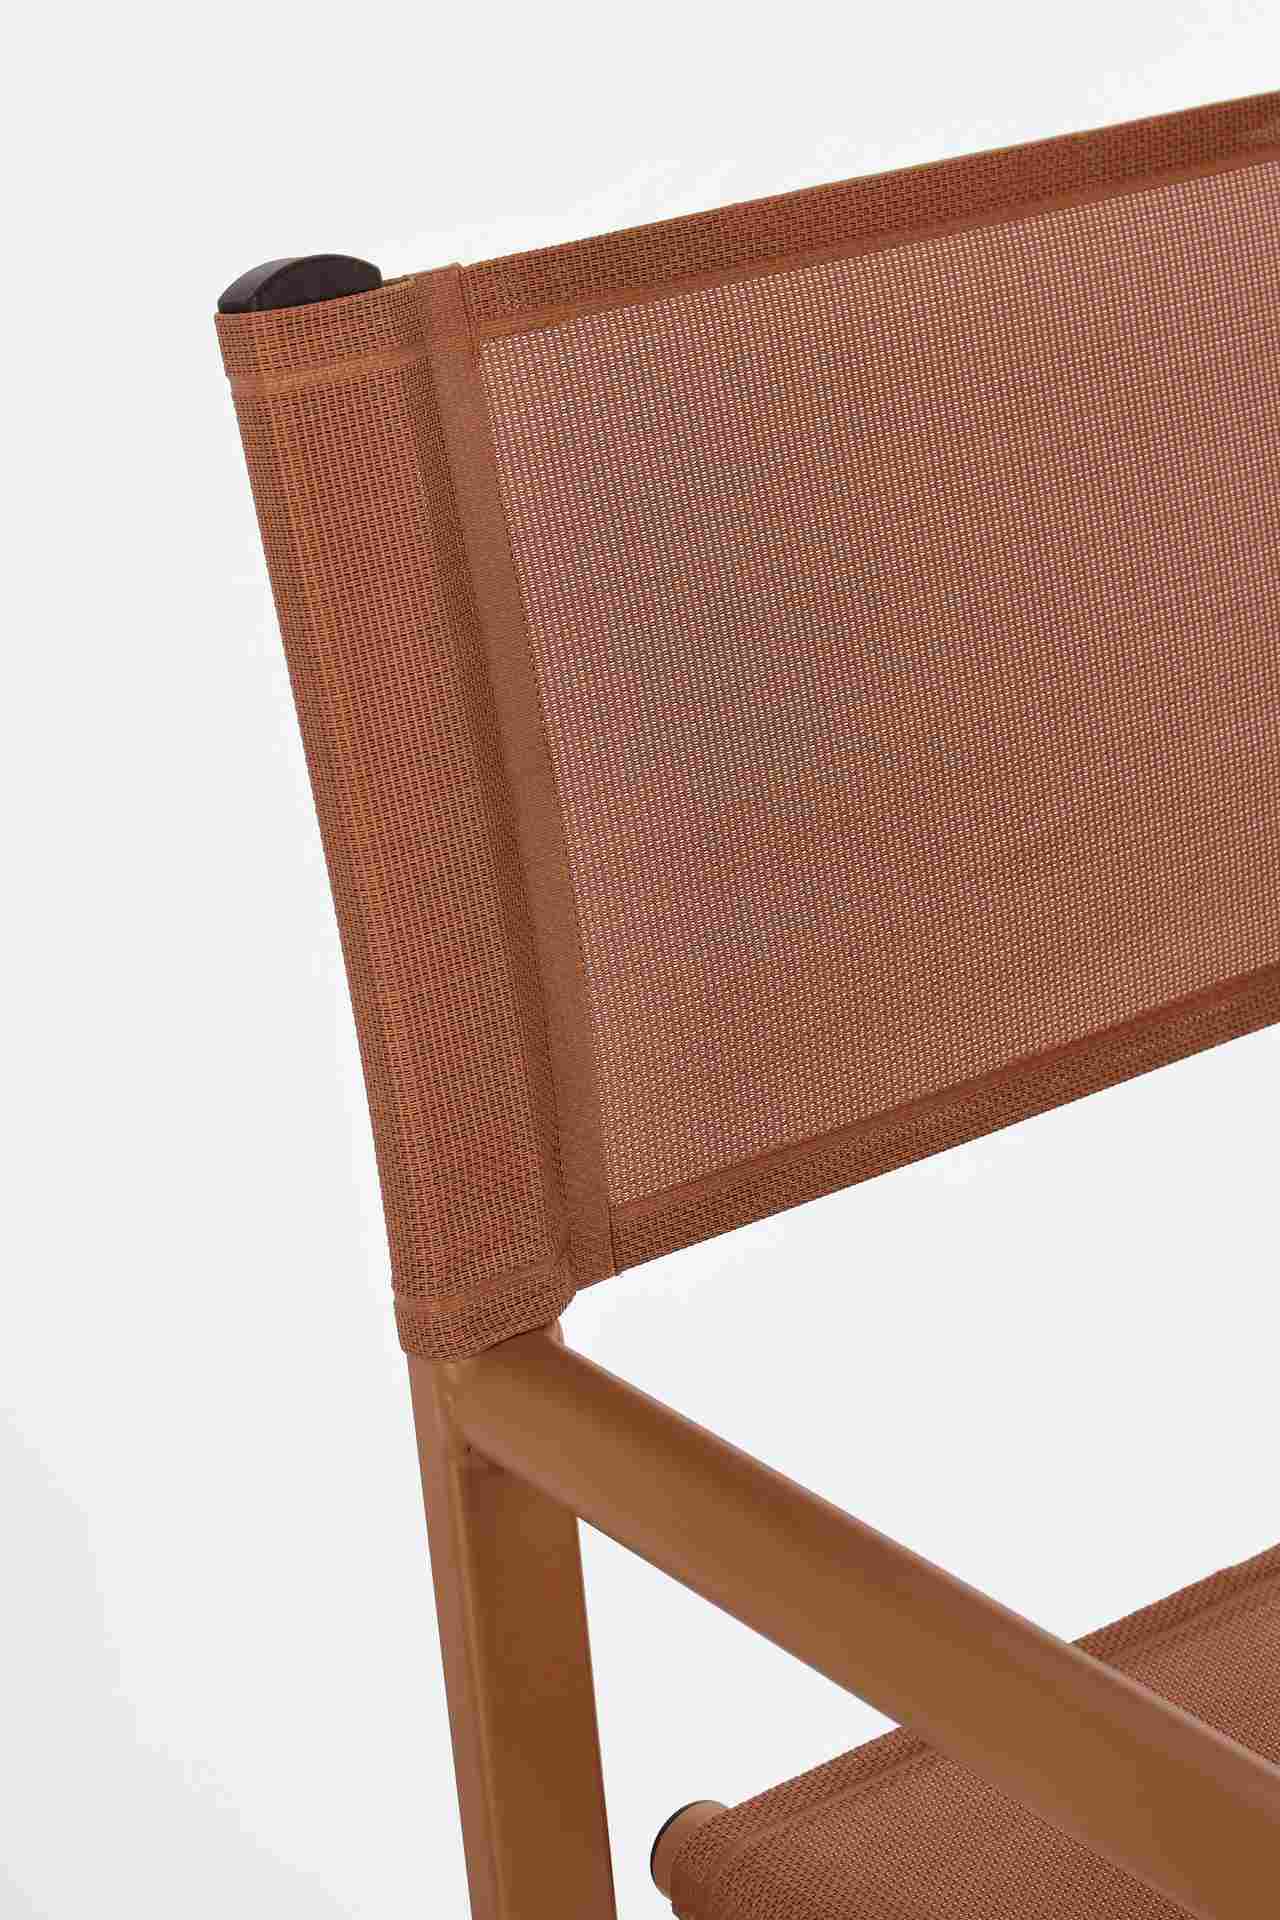 Der Gartenstuhl Taylor überzeugt mit seinem modernen Design. Gefertigt wurde er aus Textilene, welche einen roten Farbton besitzt. Das Gestell ist aus Aluminium und hat auch eine rote Farbe. Der Stuhl verfügt über eine Sitzhöhe von 45 cm und ist für den O